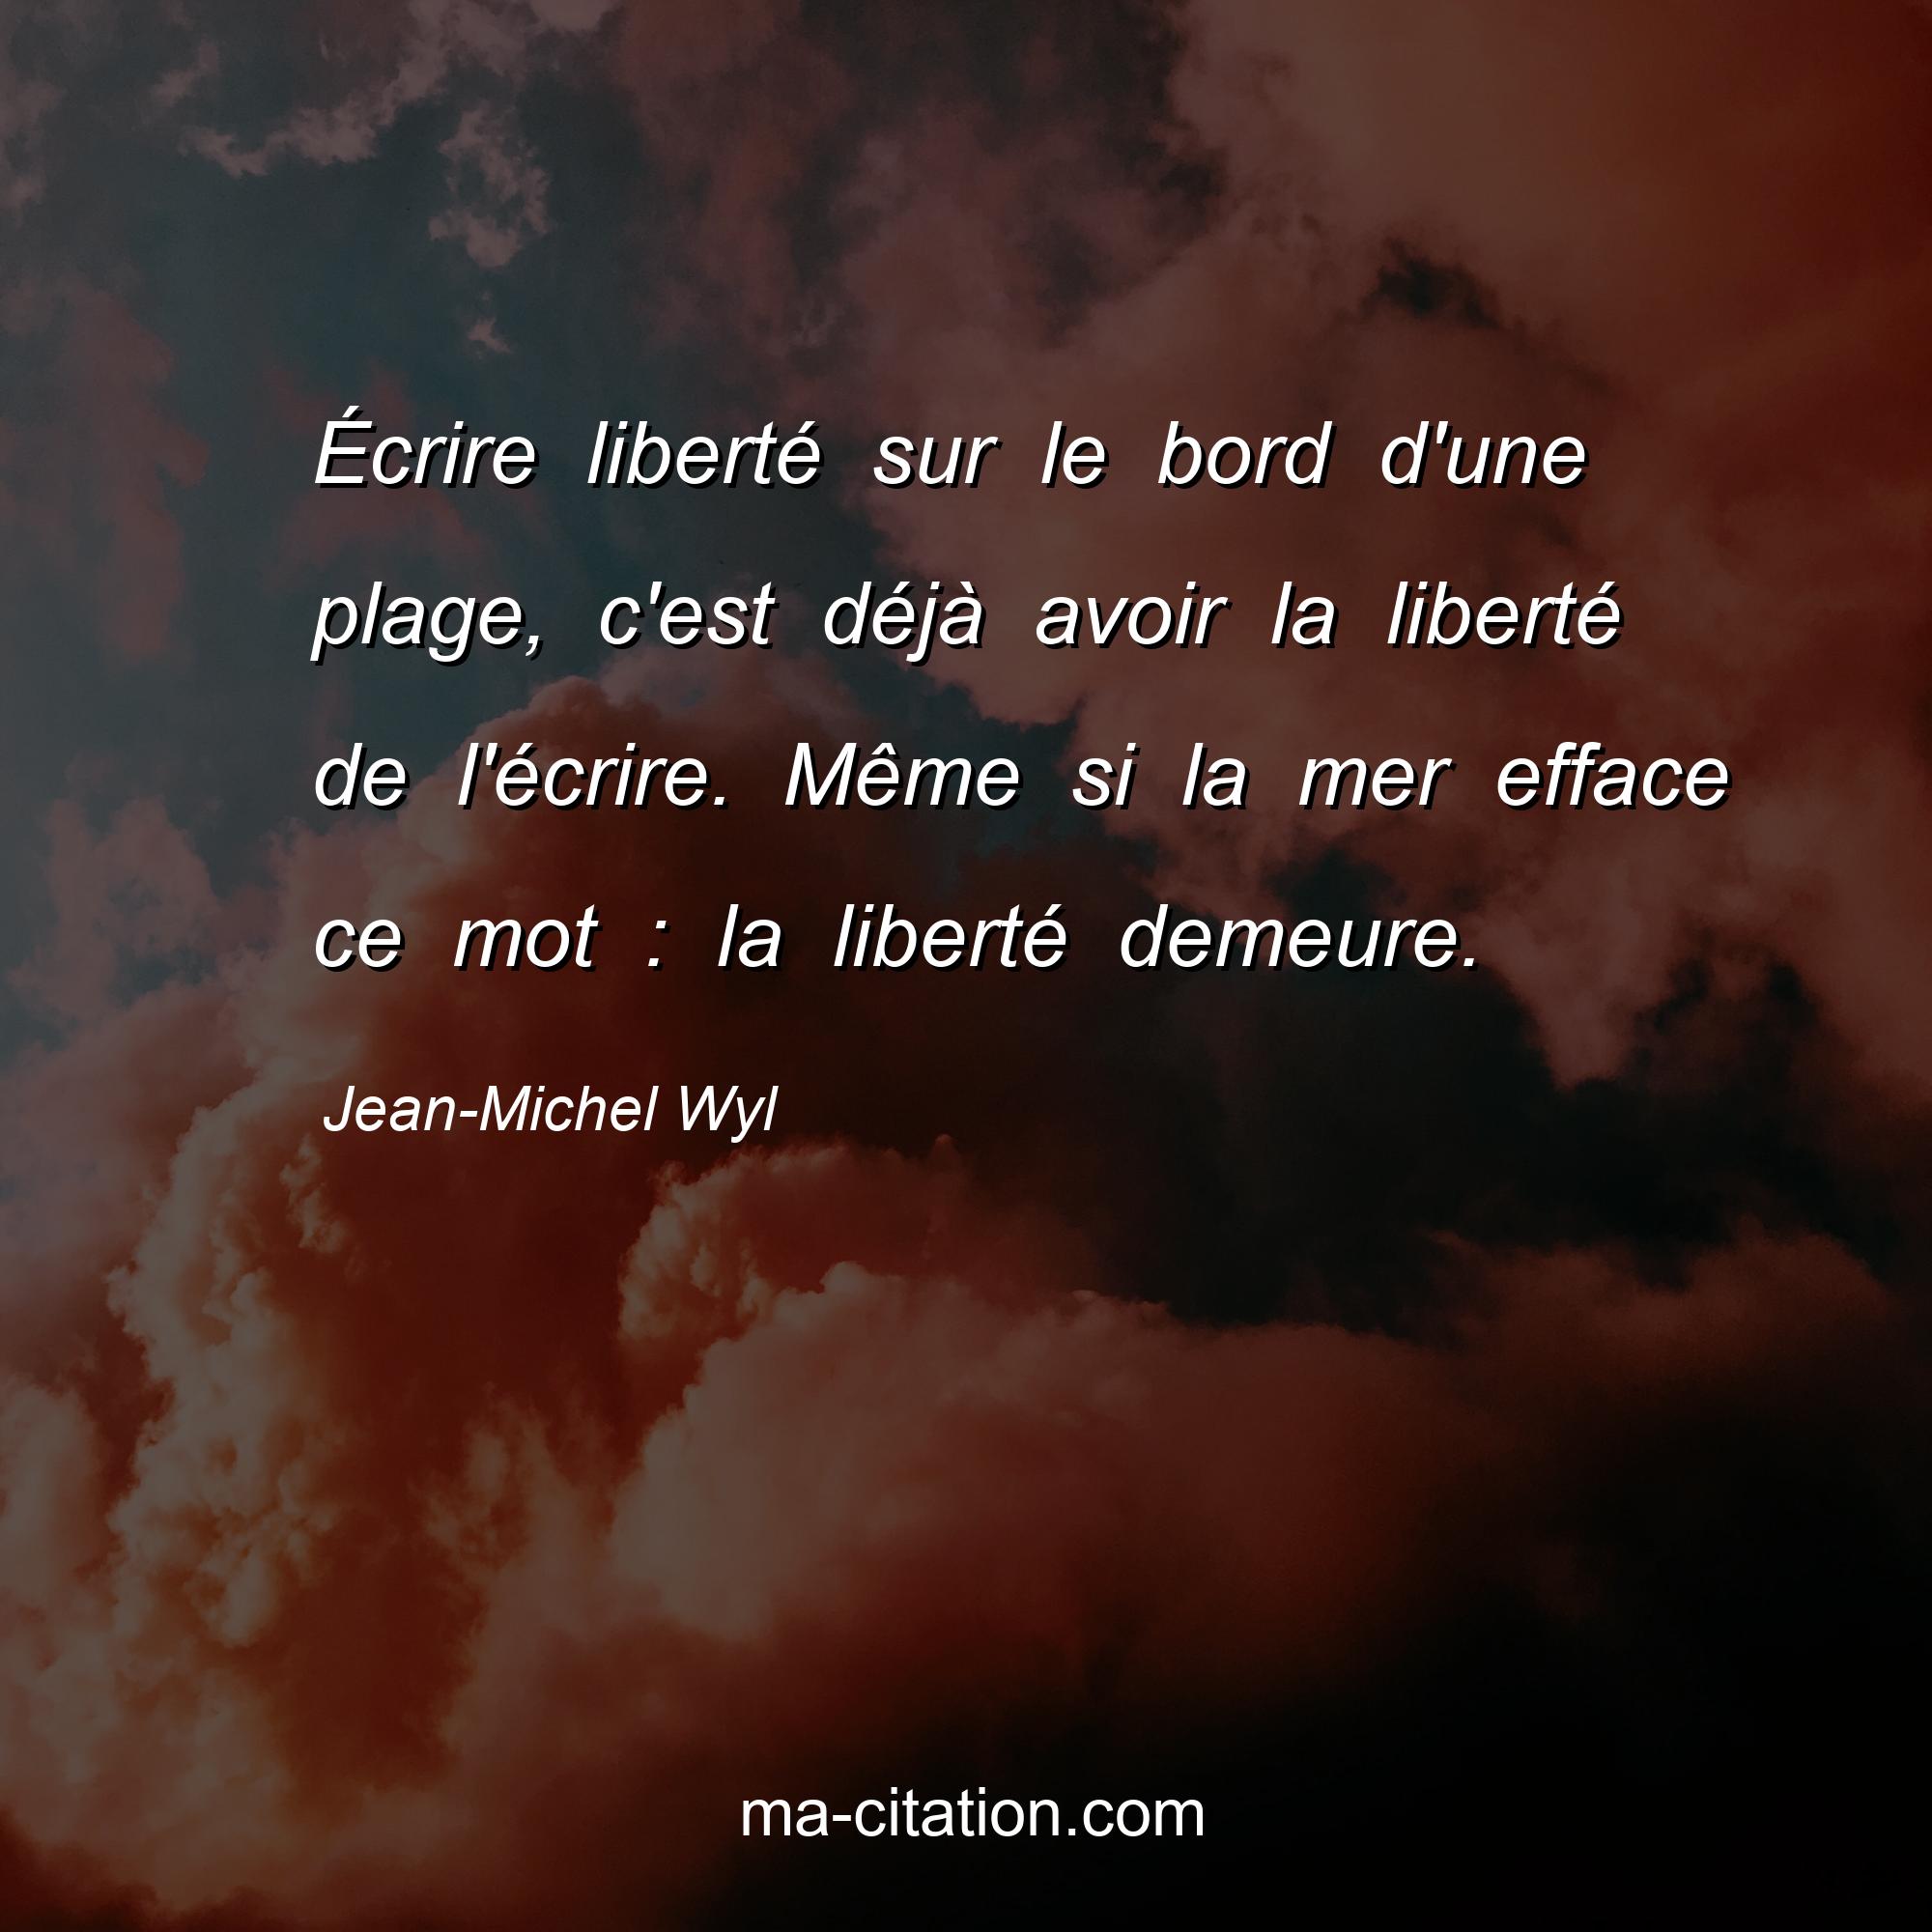 Jean-Michel Wyl : Écrire liberté sur le bord d'une plage, c'est déjà avoir la liberté de l'écrire. Même si la mer efface ce mot : la liberté demeure.